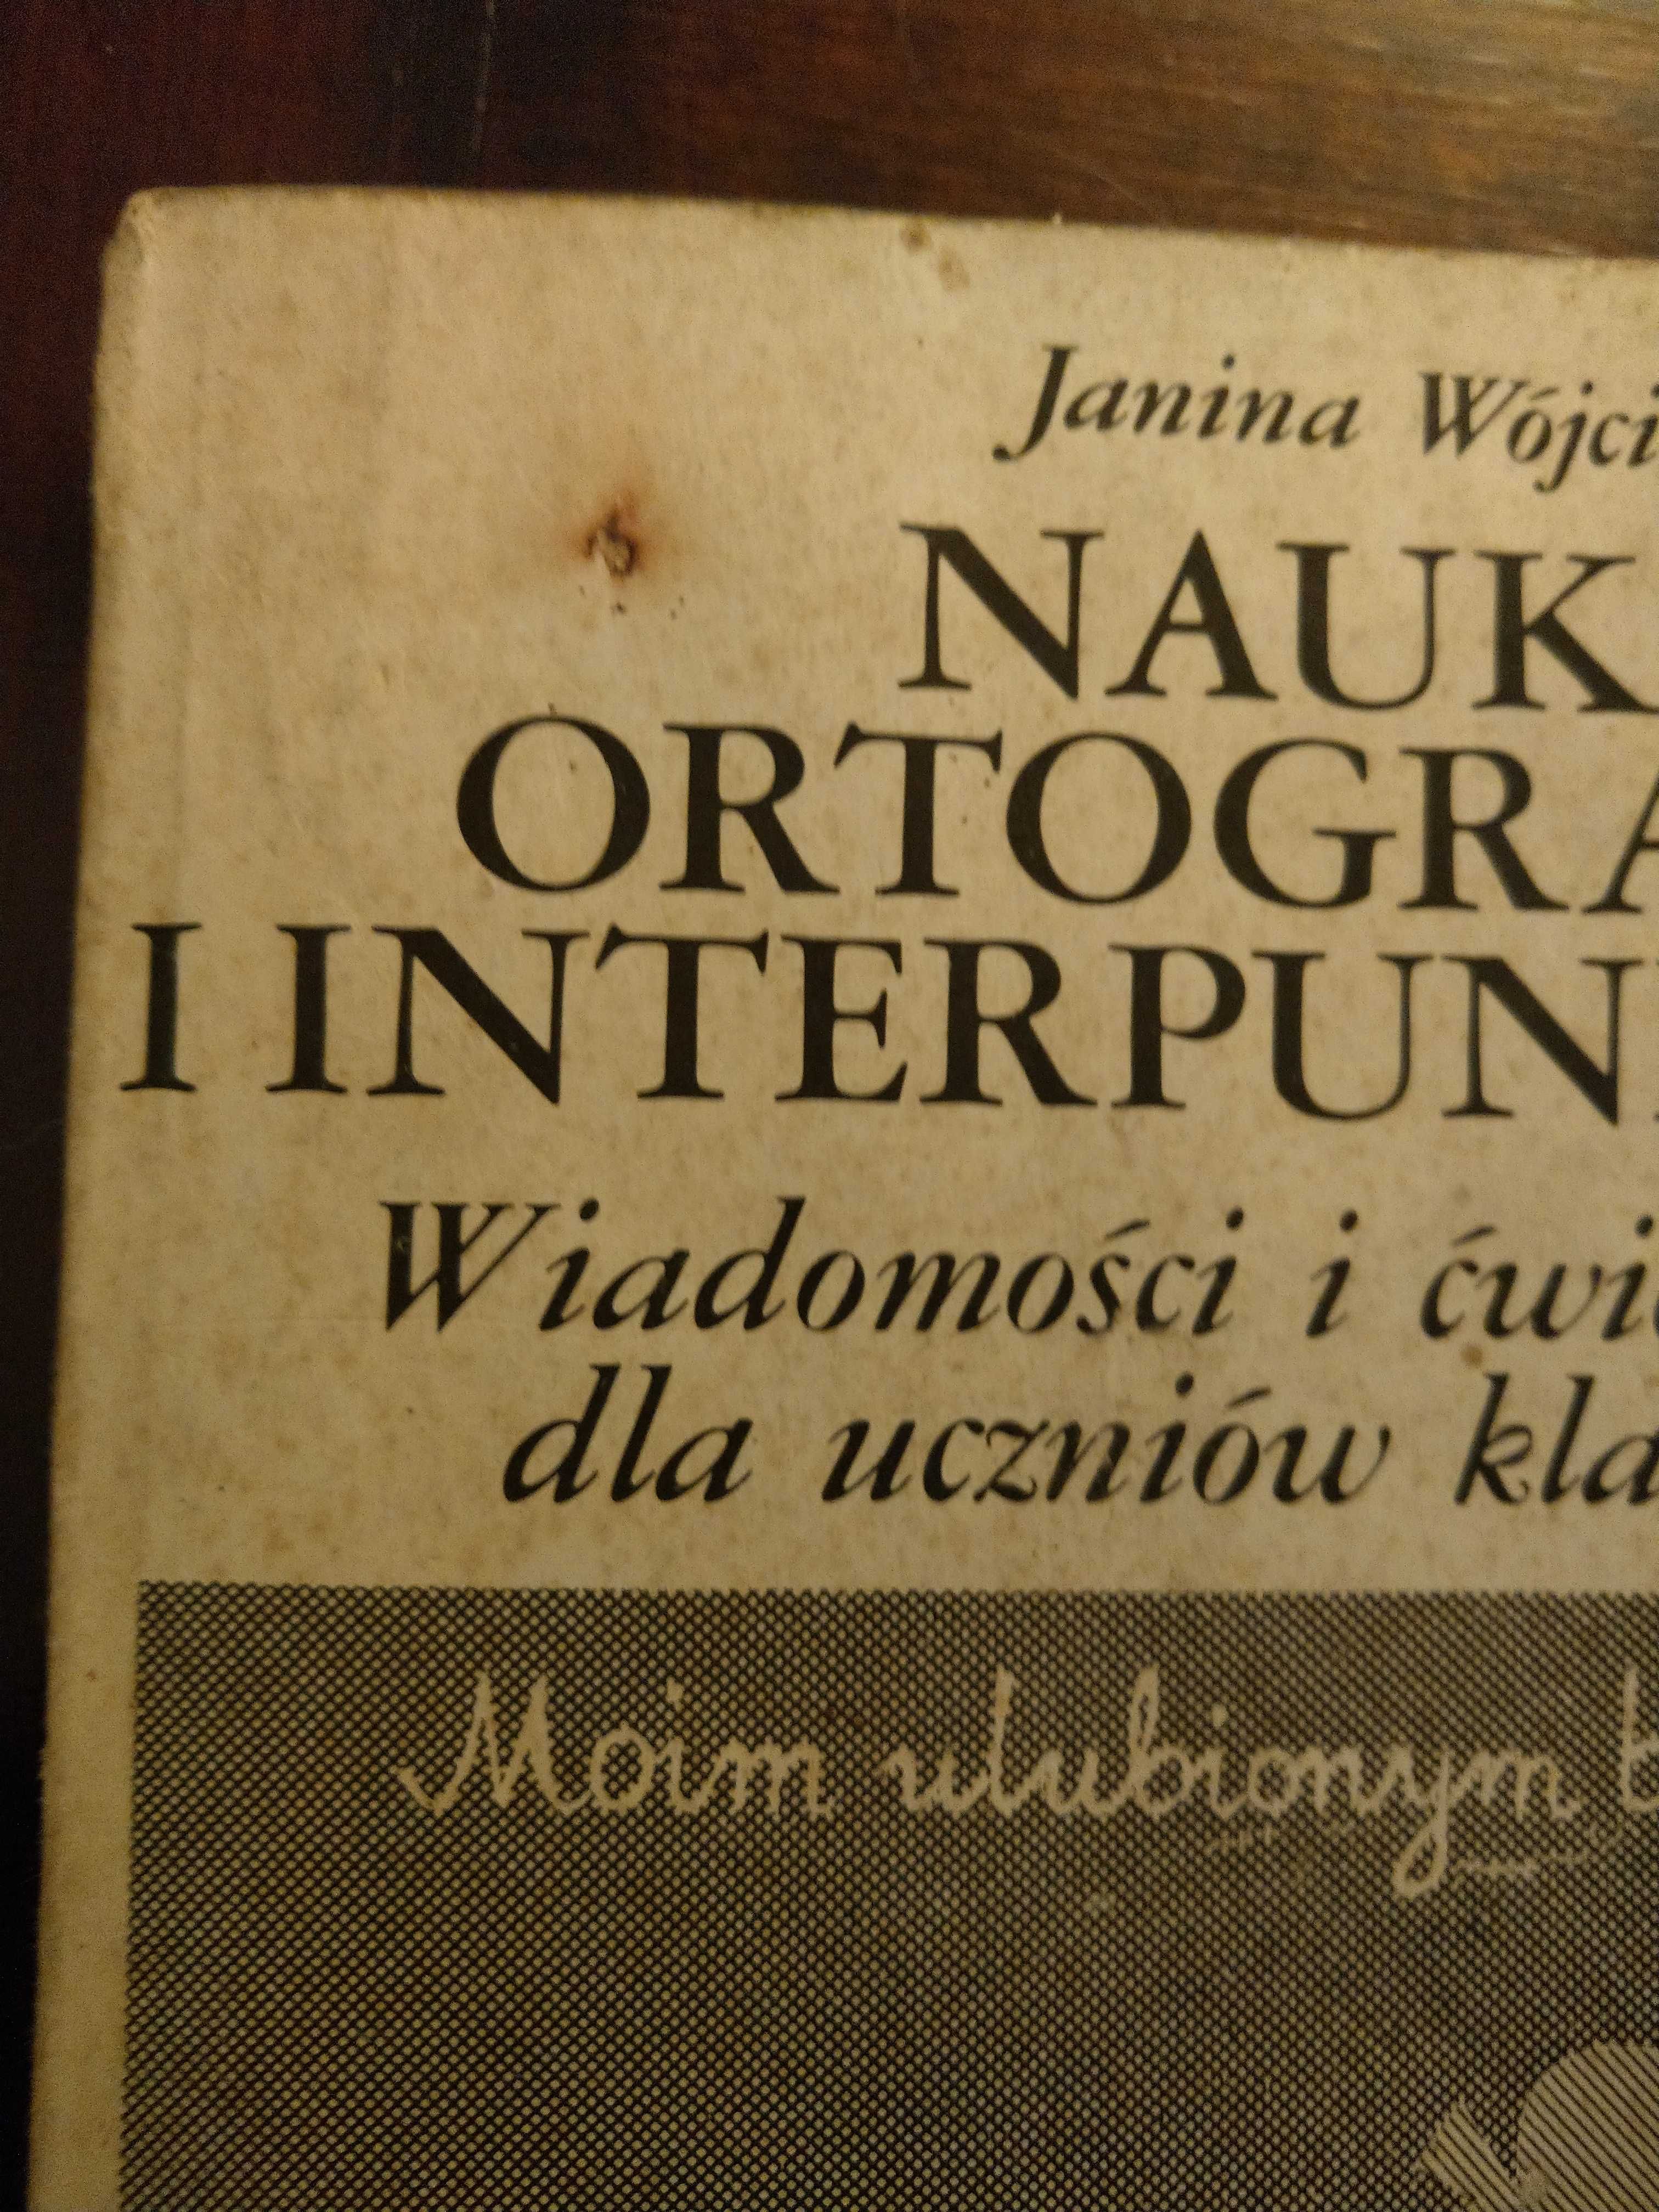 "Nauka ortografii i interpunkcji" J.Wójcik